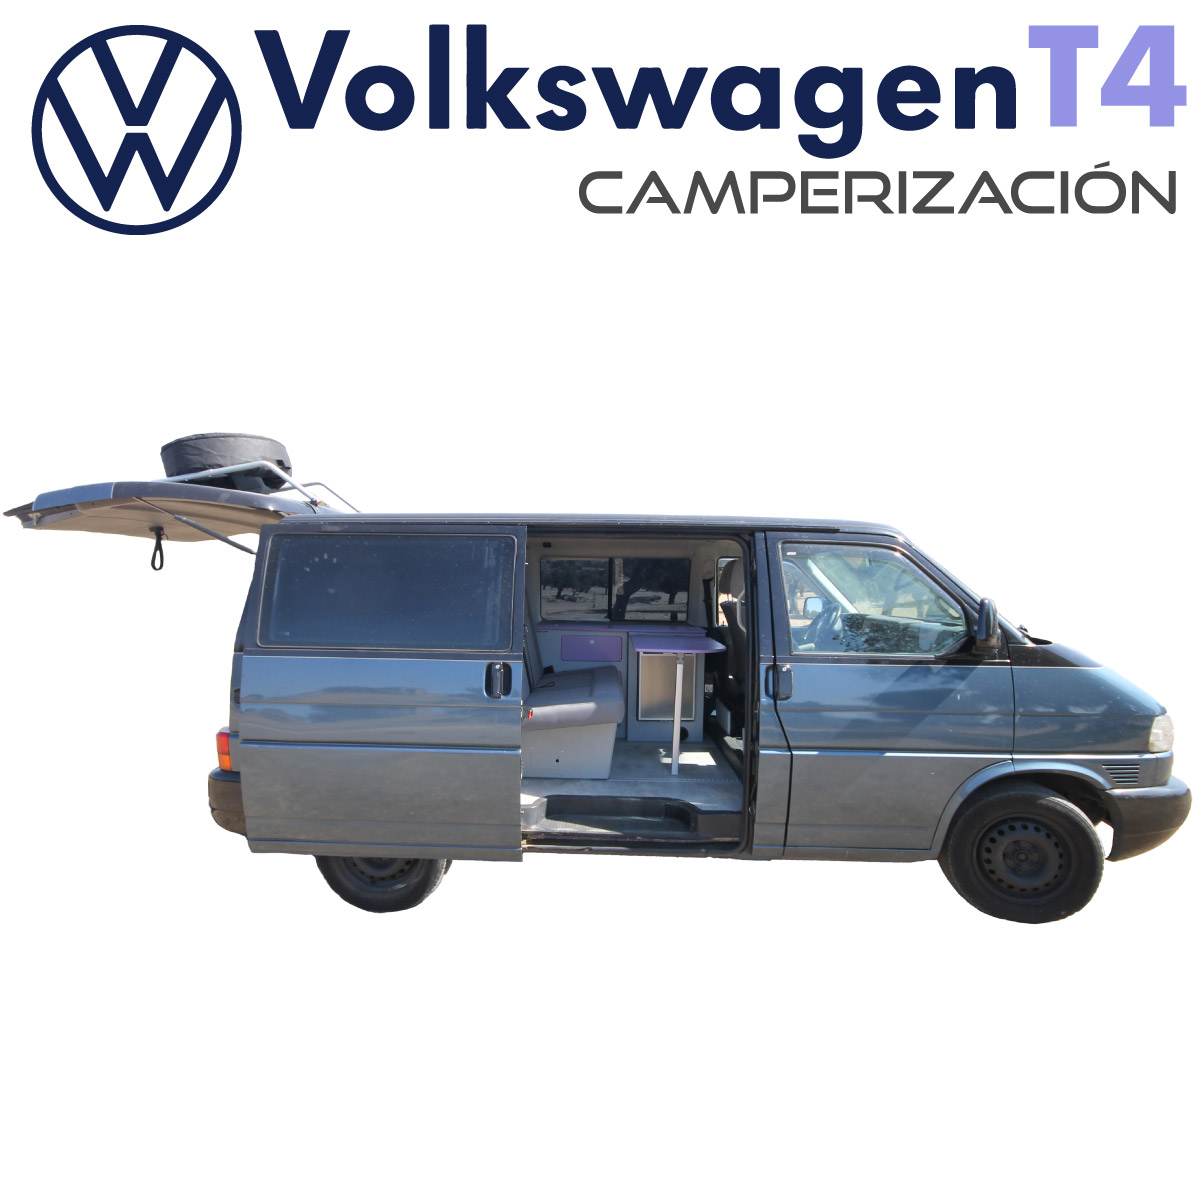 Camperización Volkswagen T4 Corta Portada